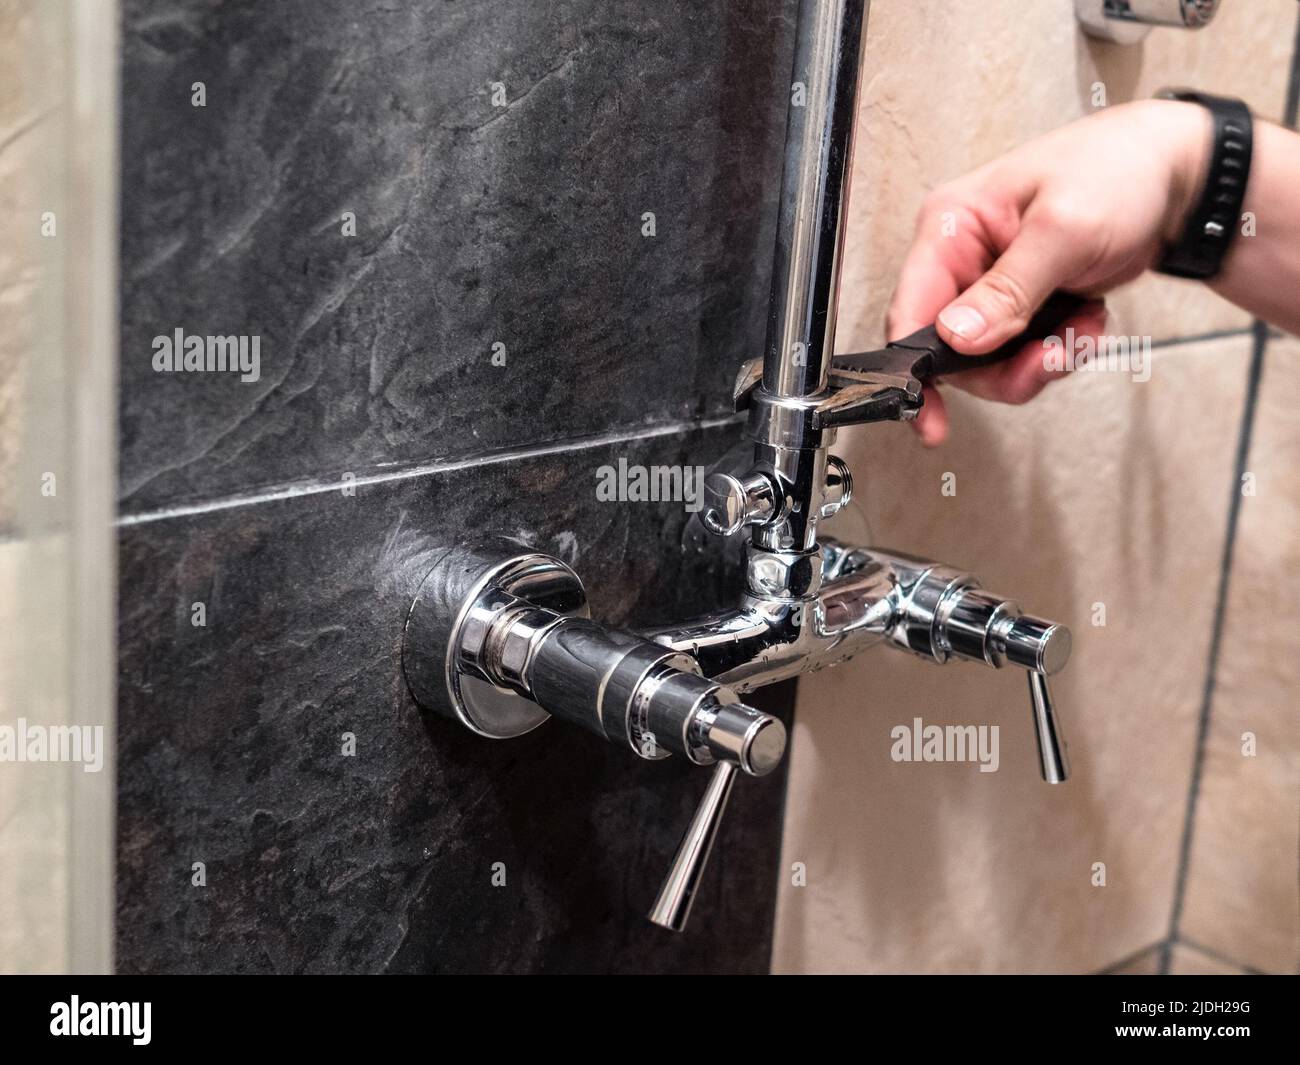 Klempner installiert Duschrohr zu Wasserhahn Ventil in Dusche zu Hause Stockfoto